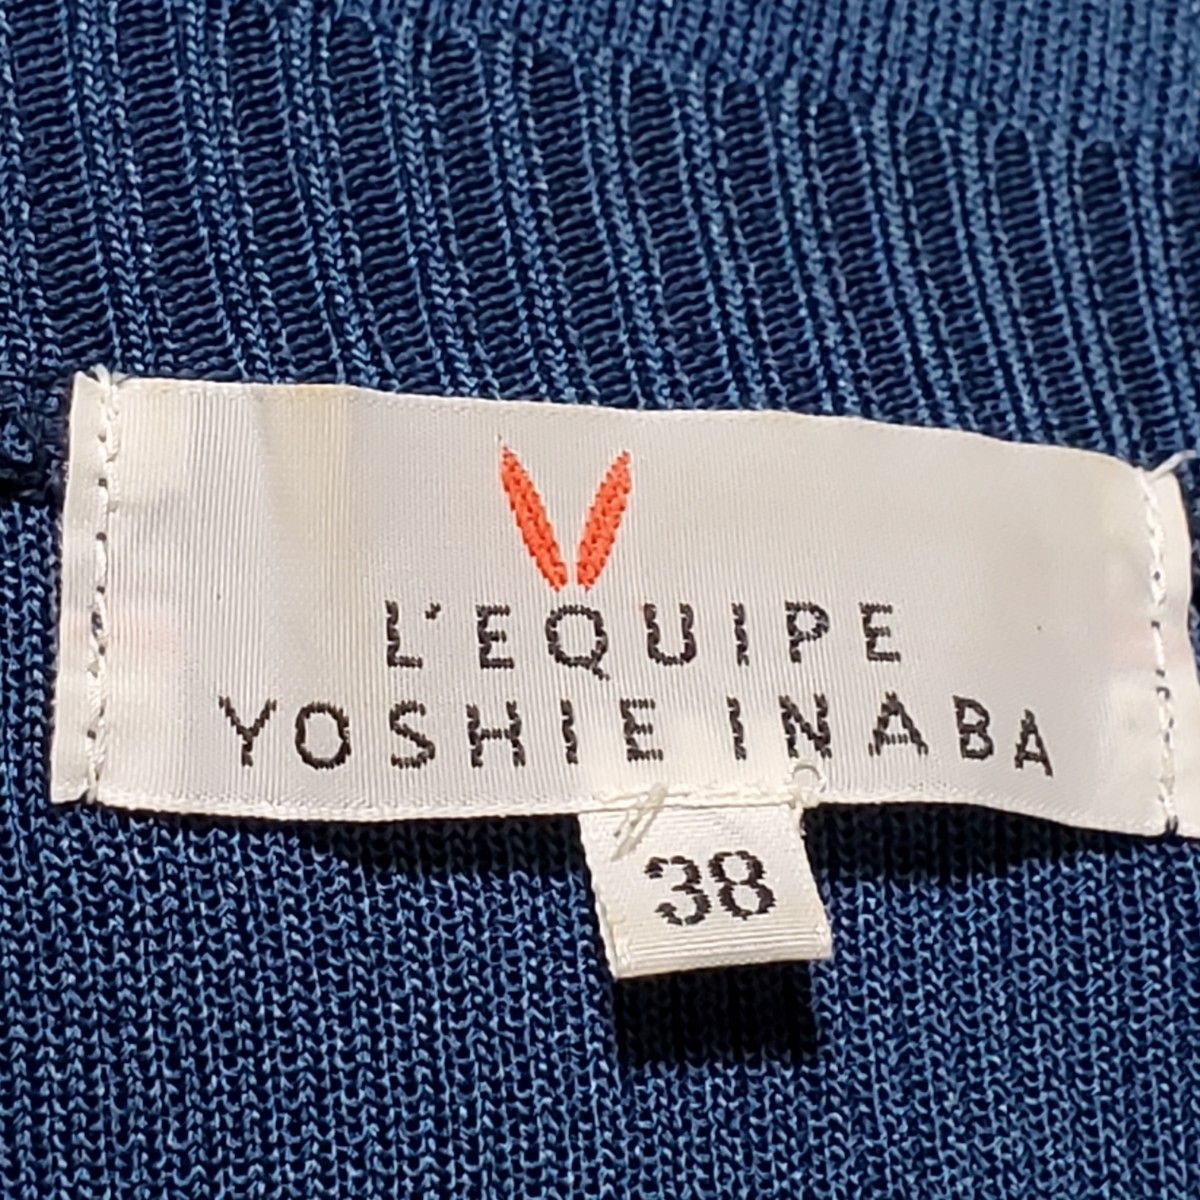 L'EQUIPE YOSHIE INABA レキップ ヨシエイナバ Vネック ニット 38 Mサイズ 紺 ネイビー 日本製 七分袖